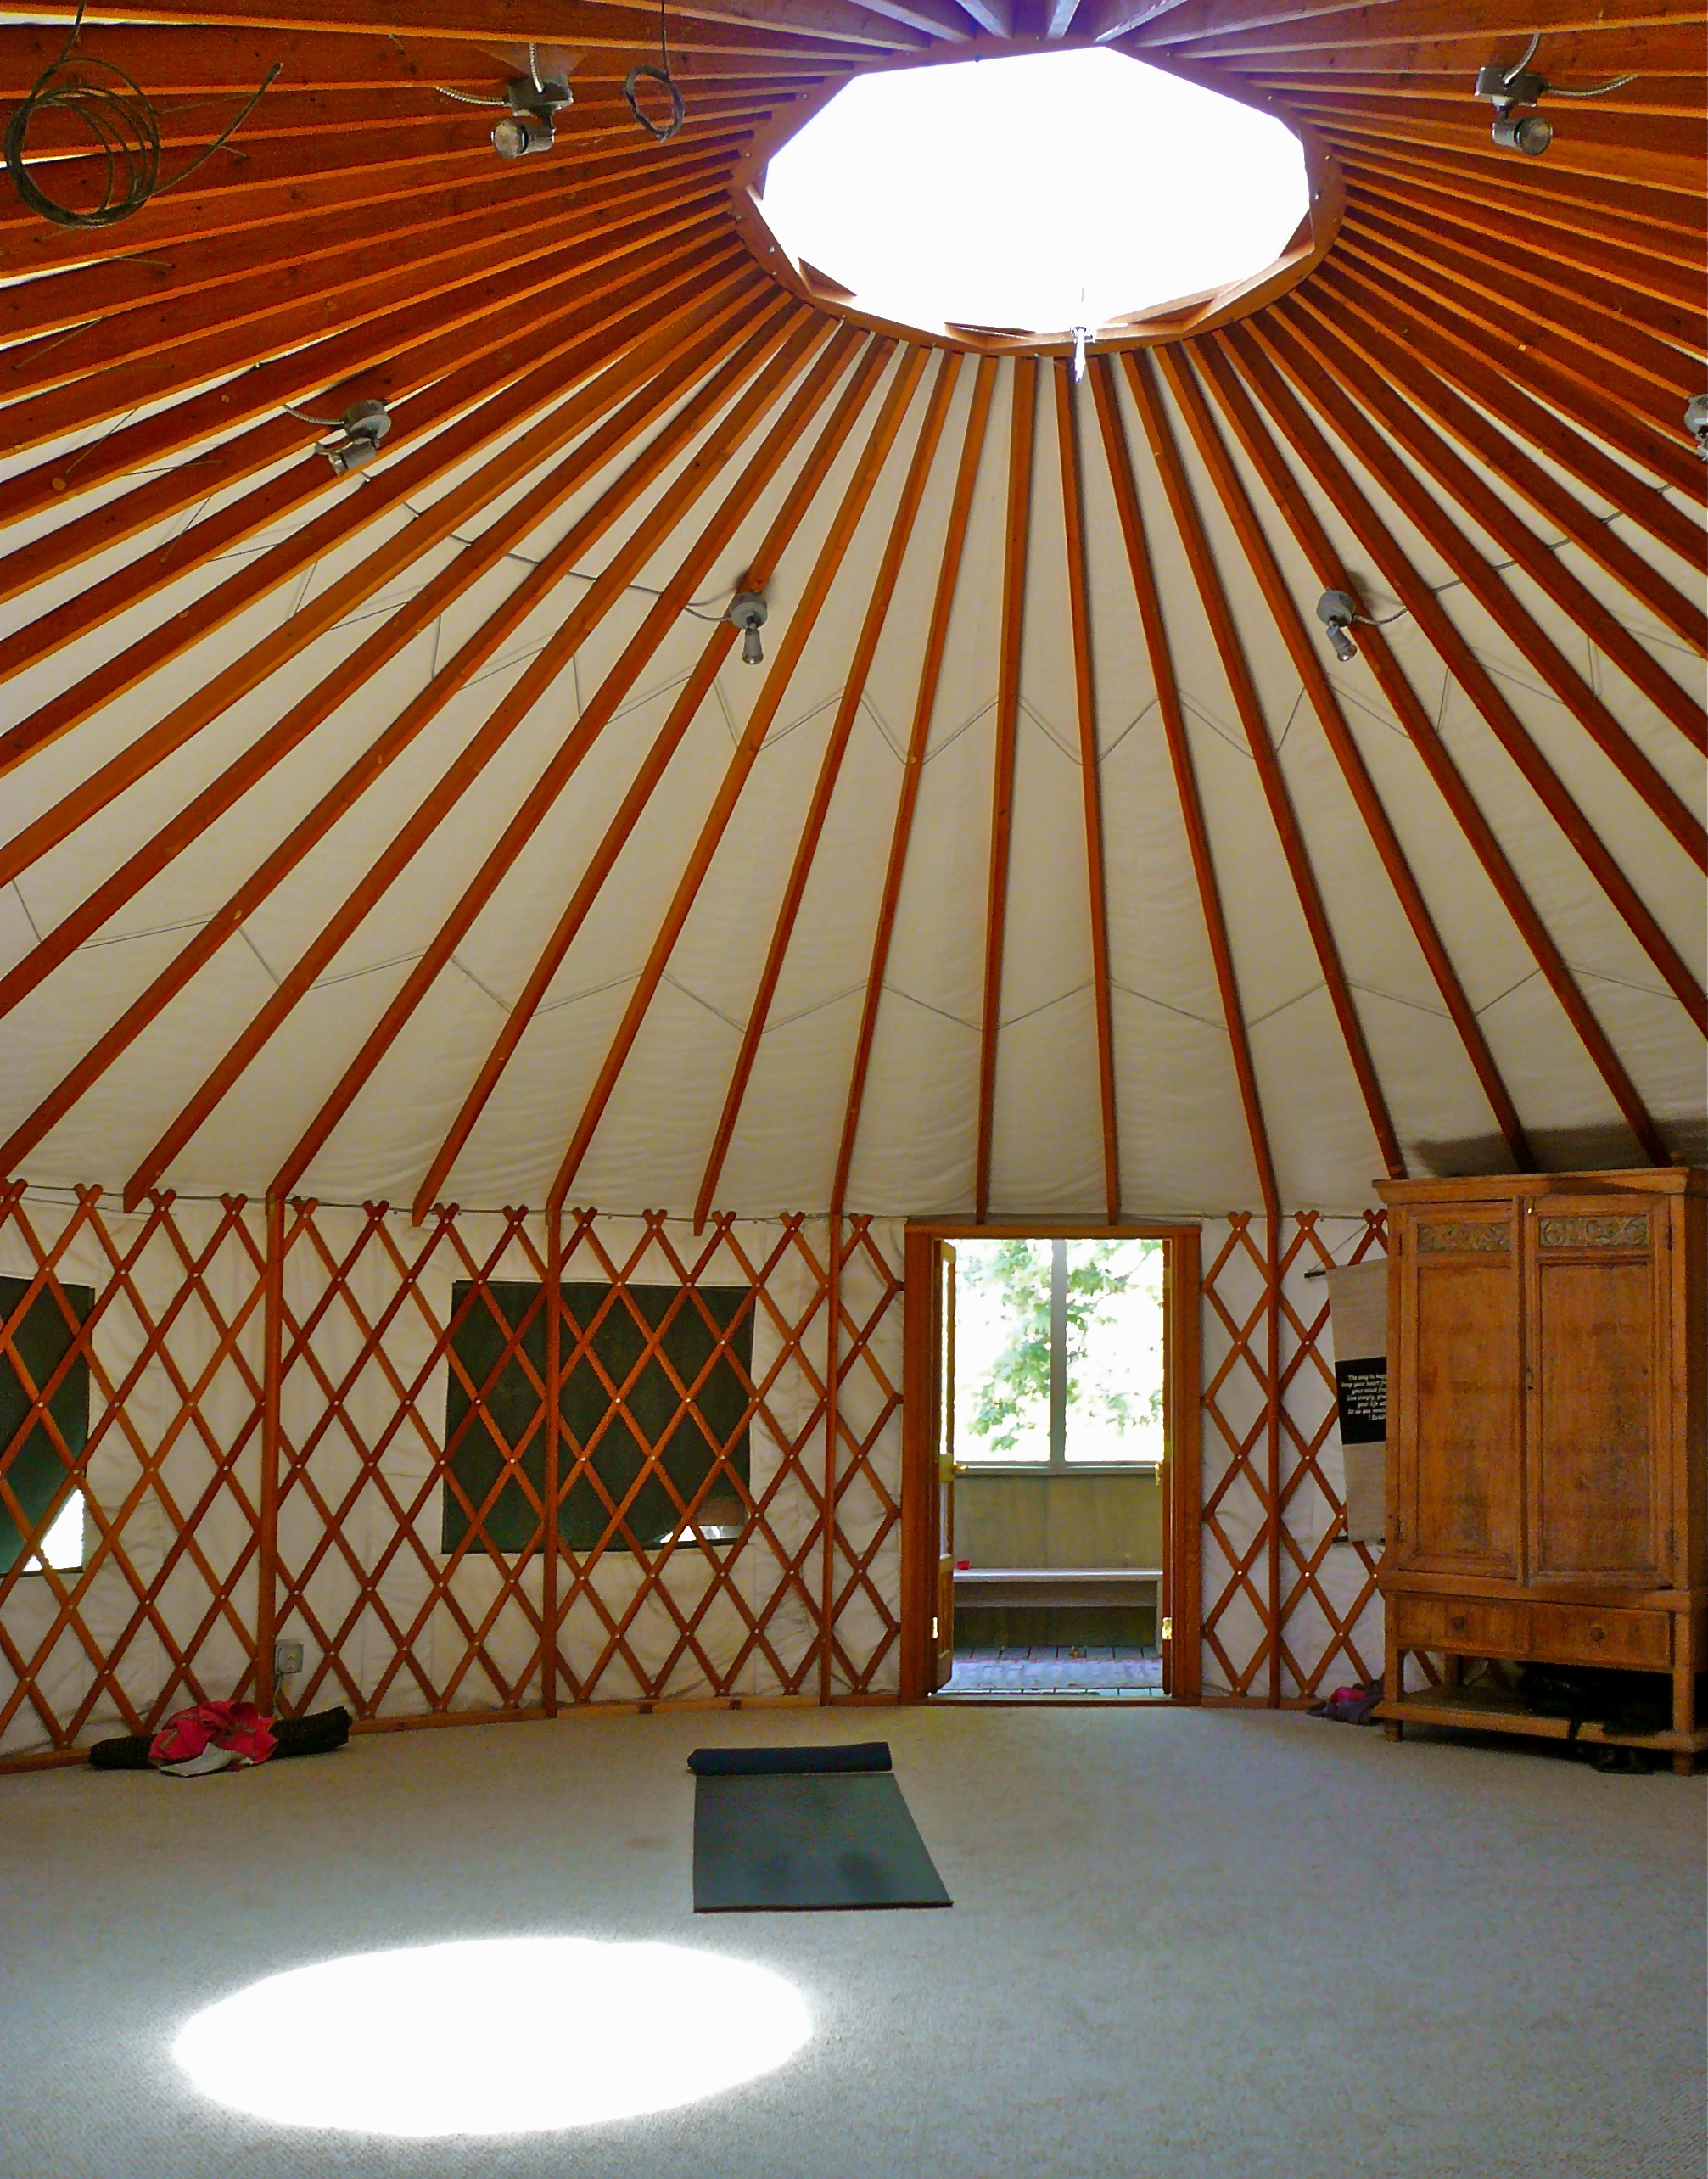 yurt interior layout